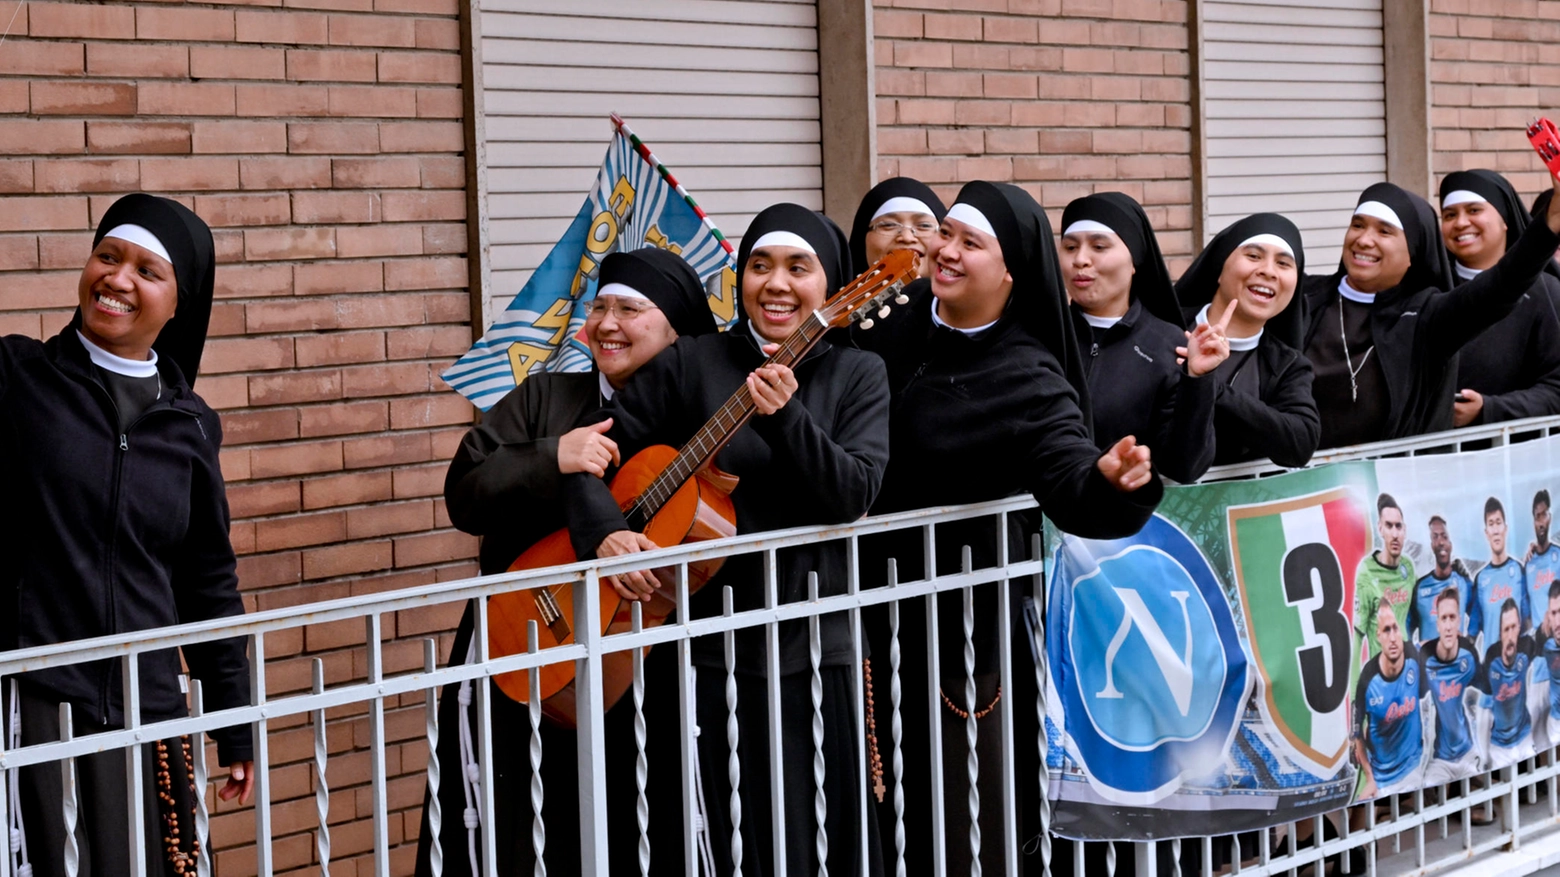 Festa scudetto: a Casoria ci sono le 'sisters act' del Napoli